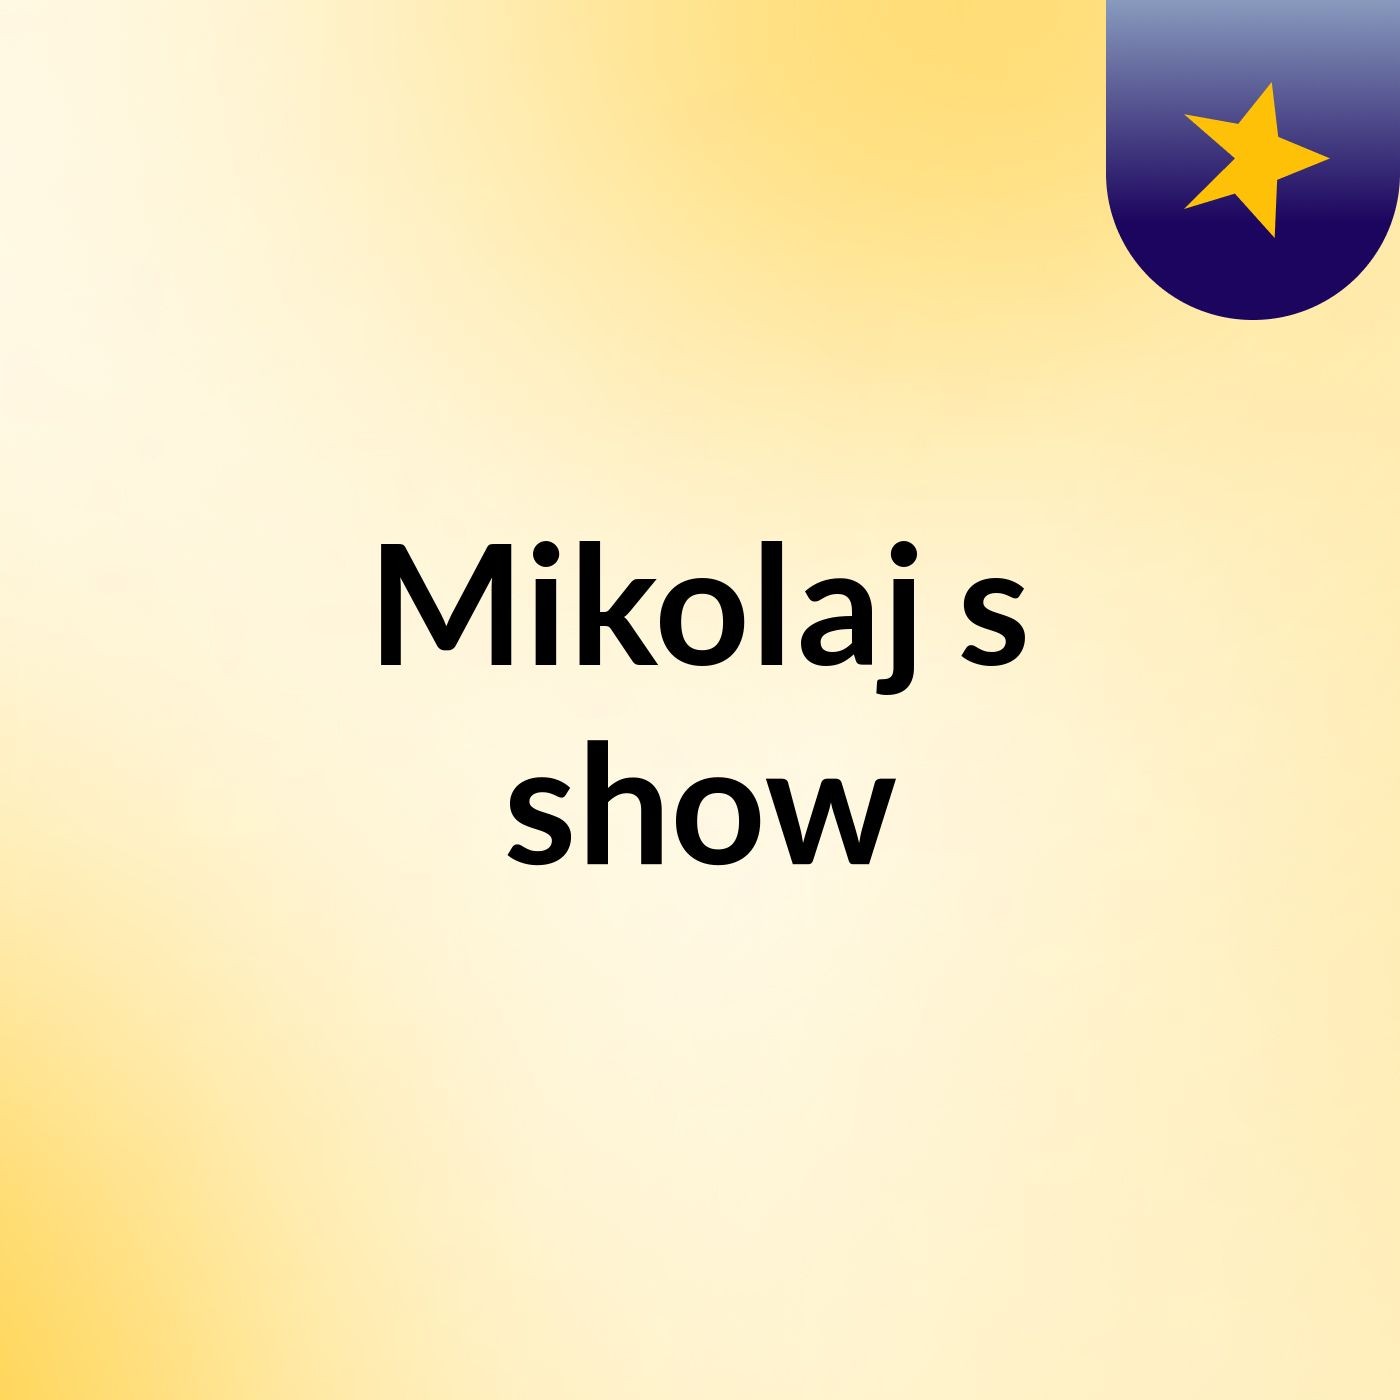 Mikolaj's show